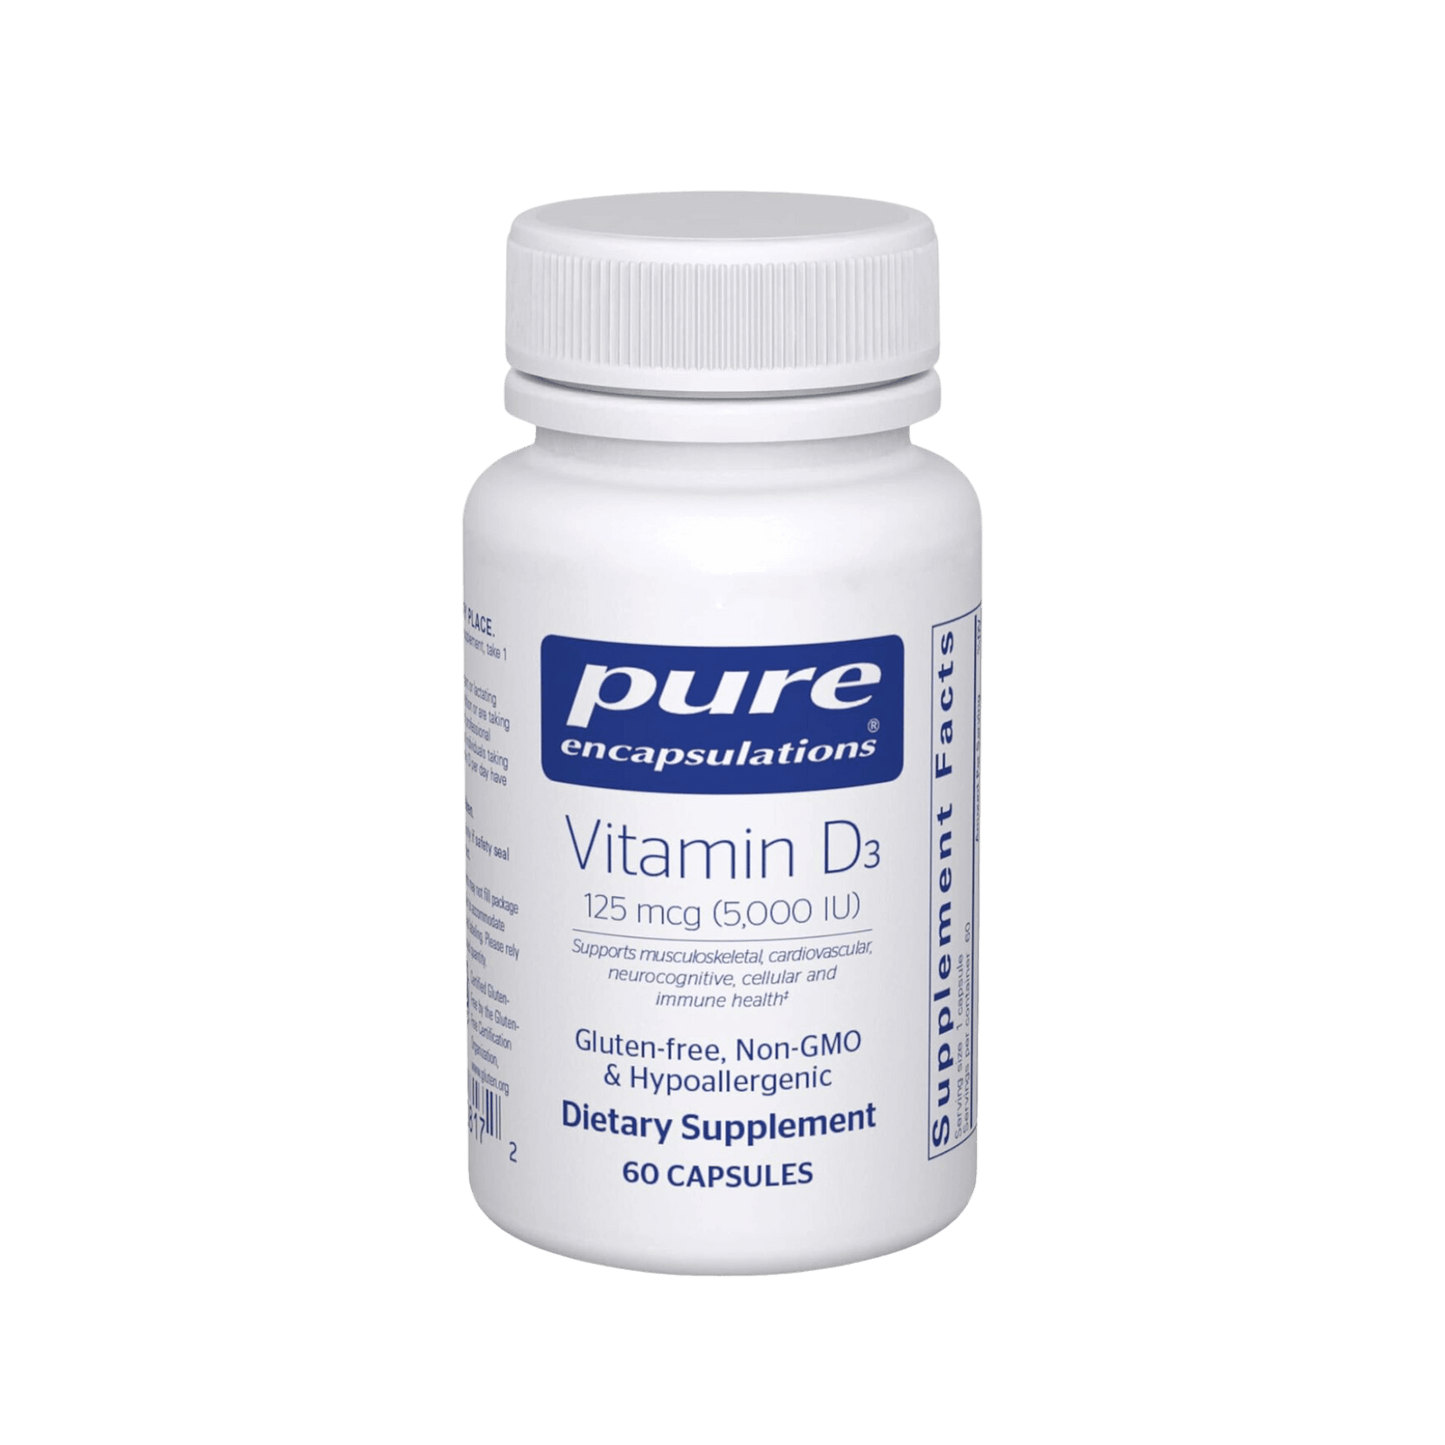 Pure Encapsulations Vitamin D3 125 mcg capsules